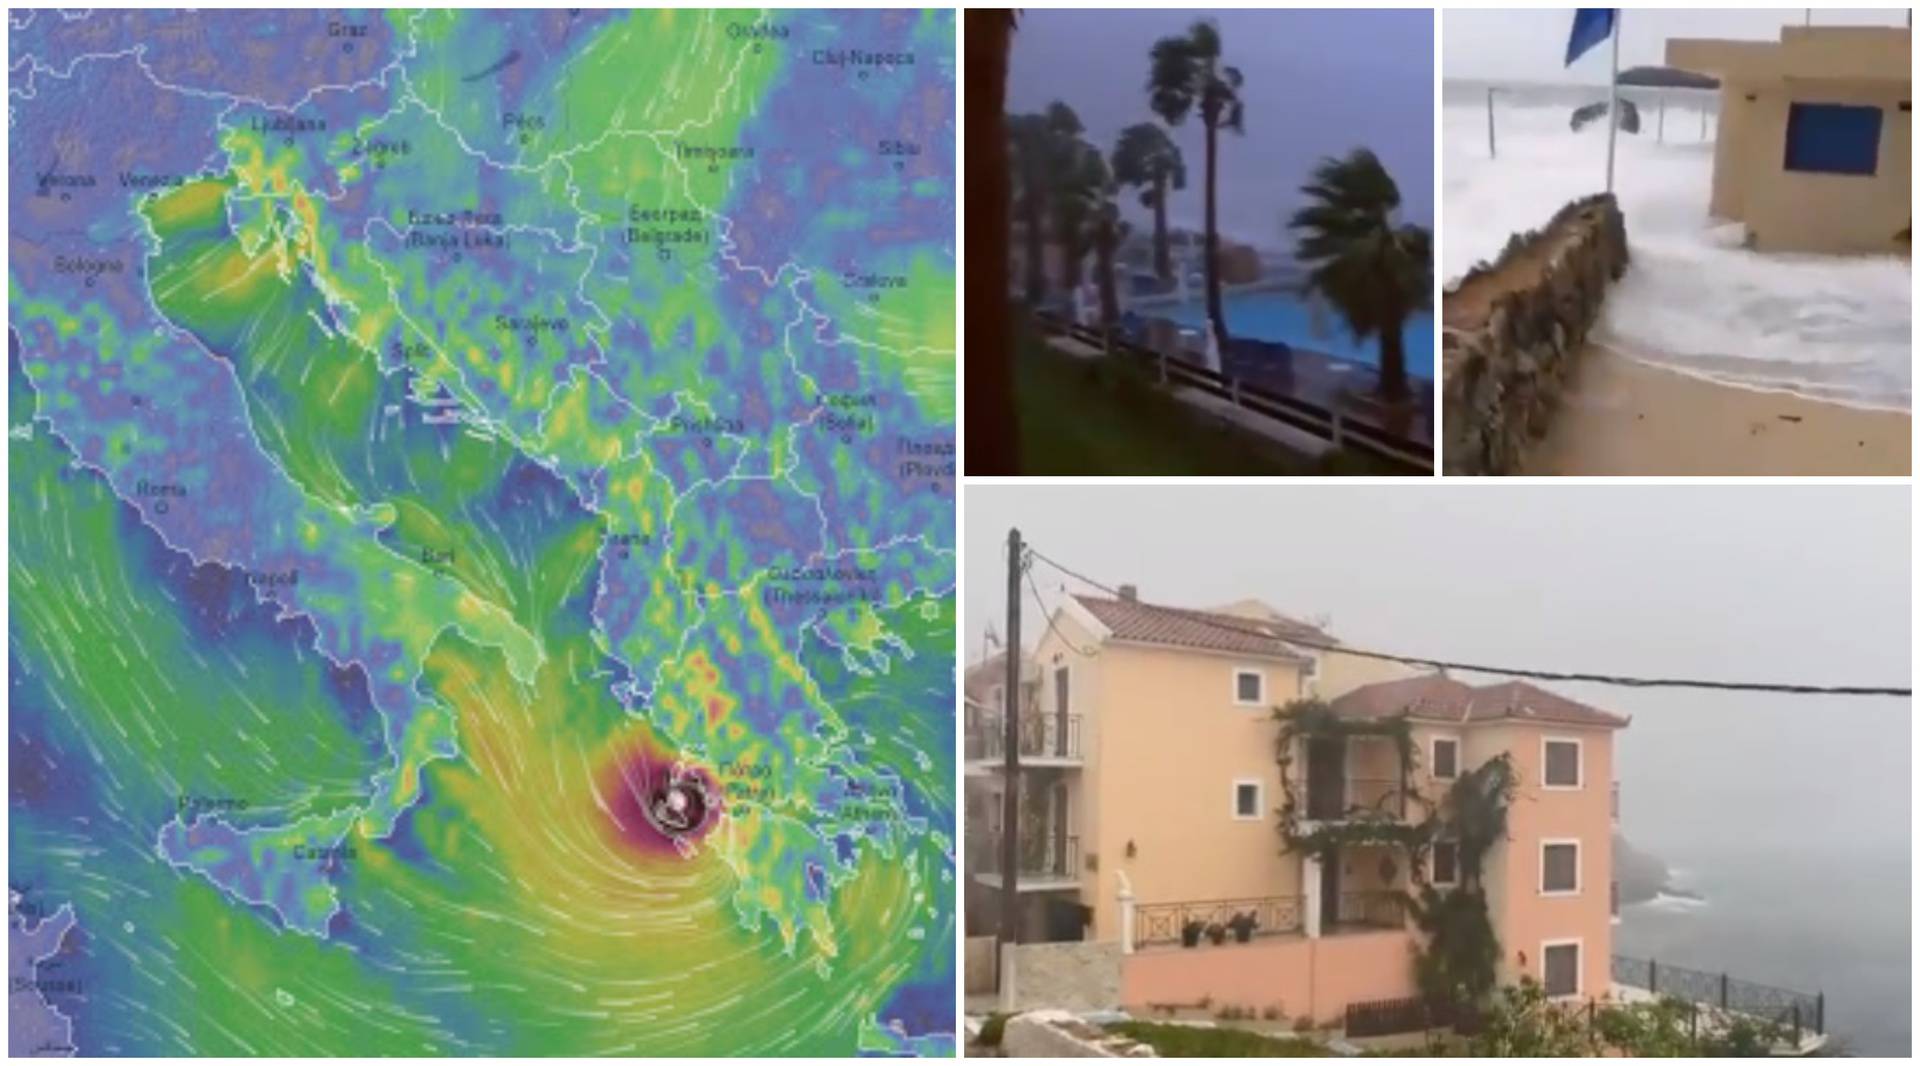 Uragan sve bliže Grčkoj: Brzo pronađite alternativni smještaj!